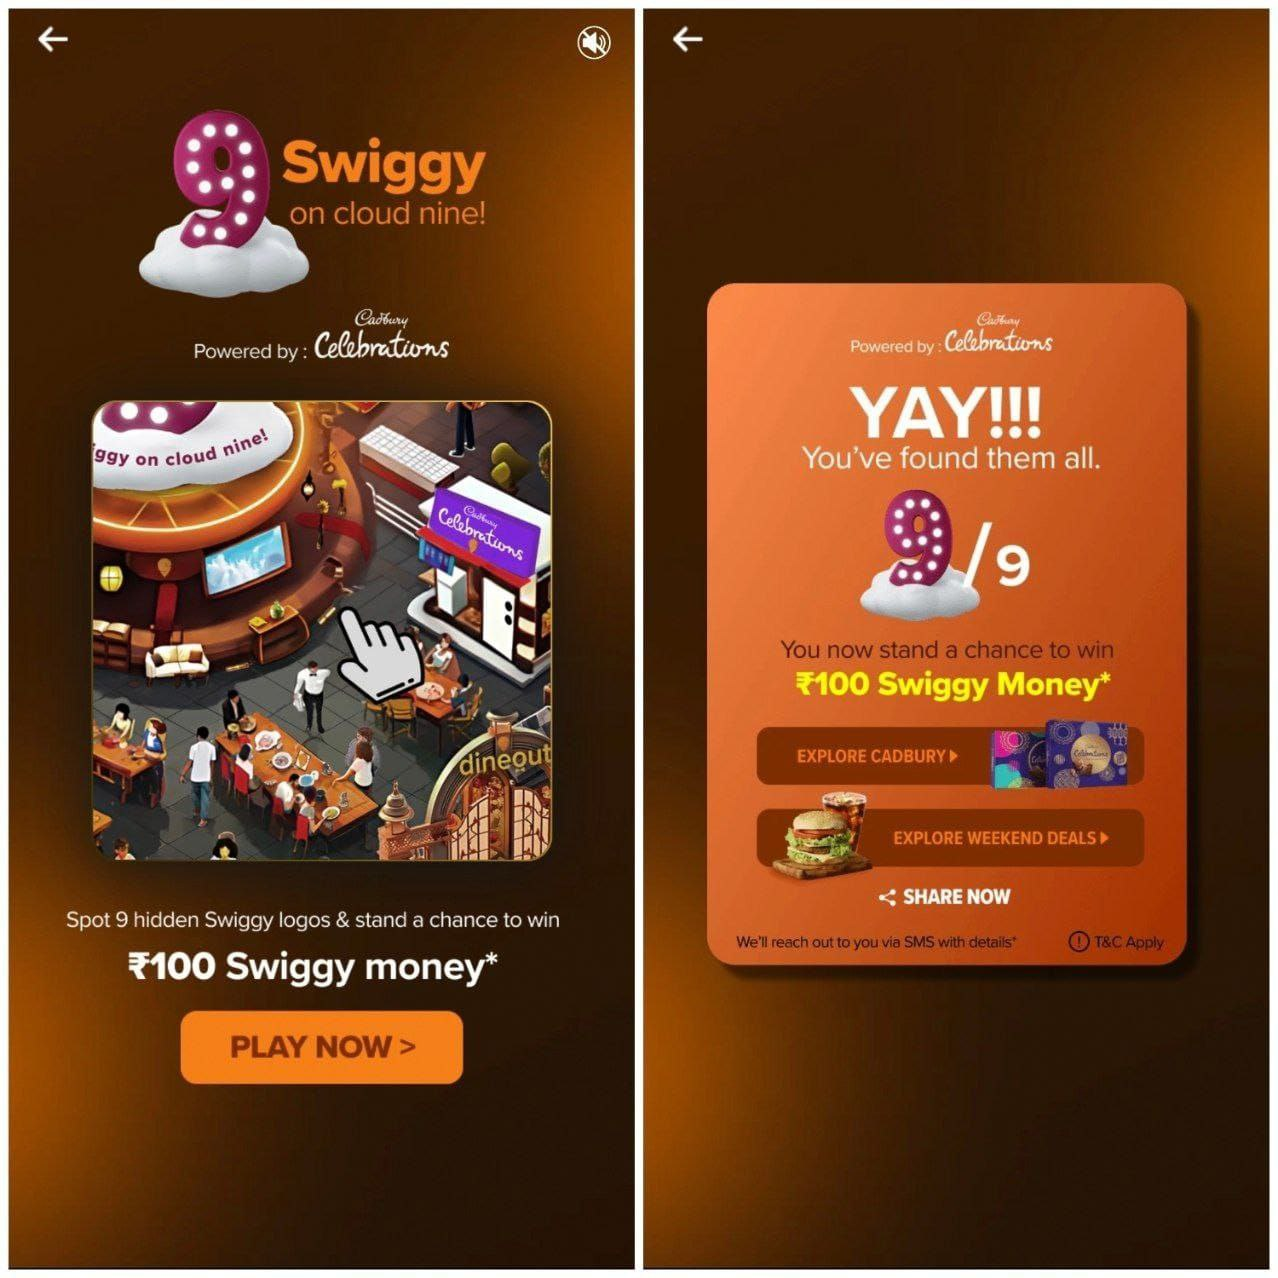 Swiggy Cloud Nine Offer: Spot & Win Free ₹100 Swiggy Cash 